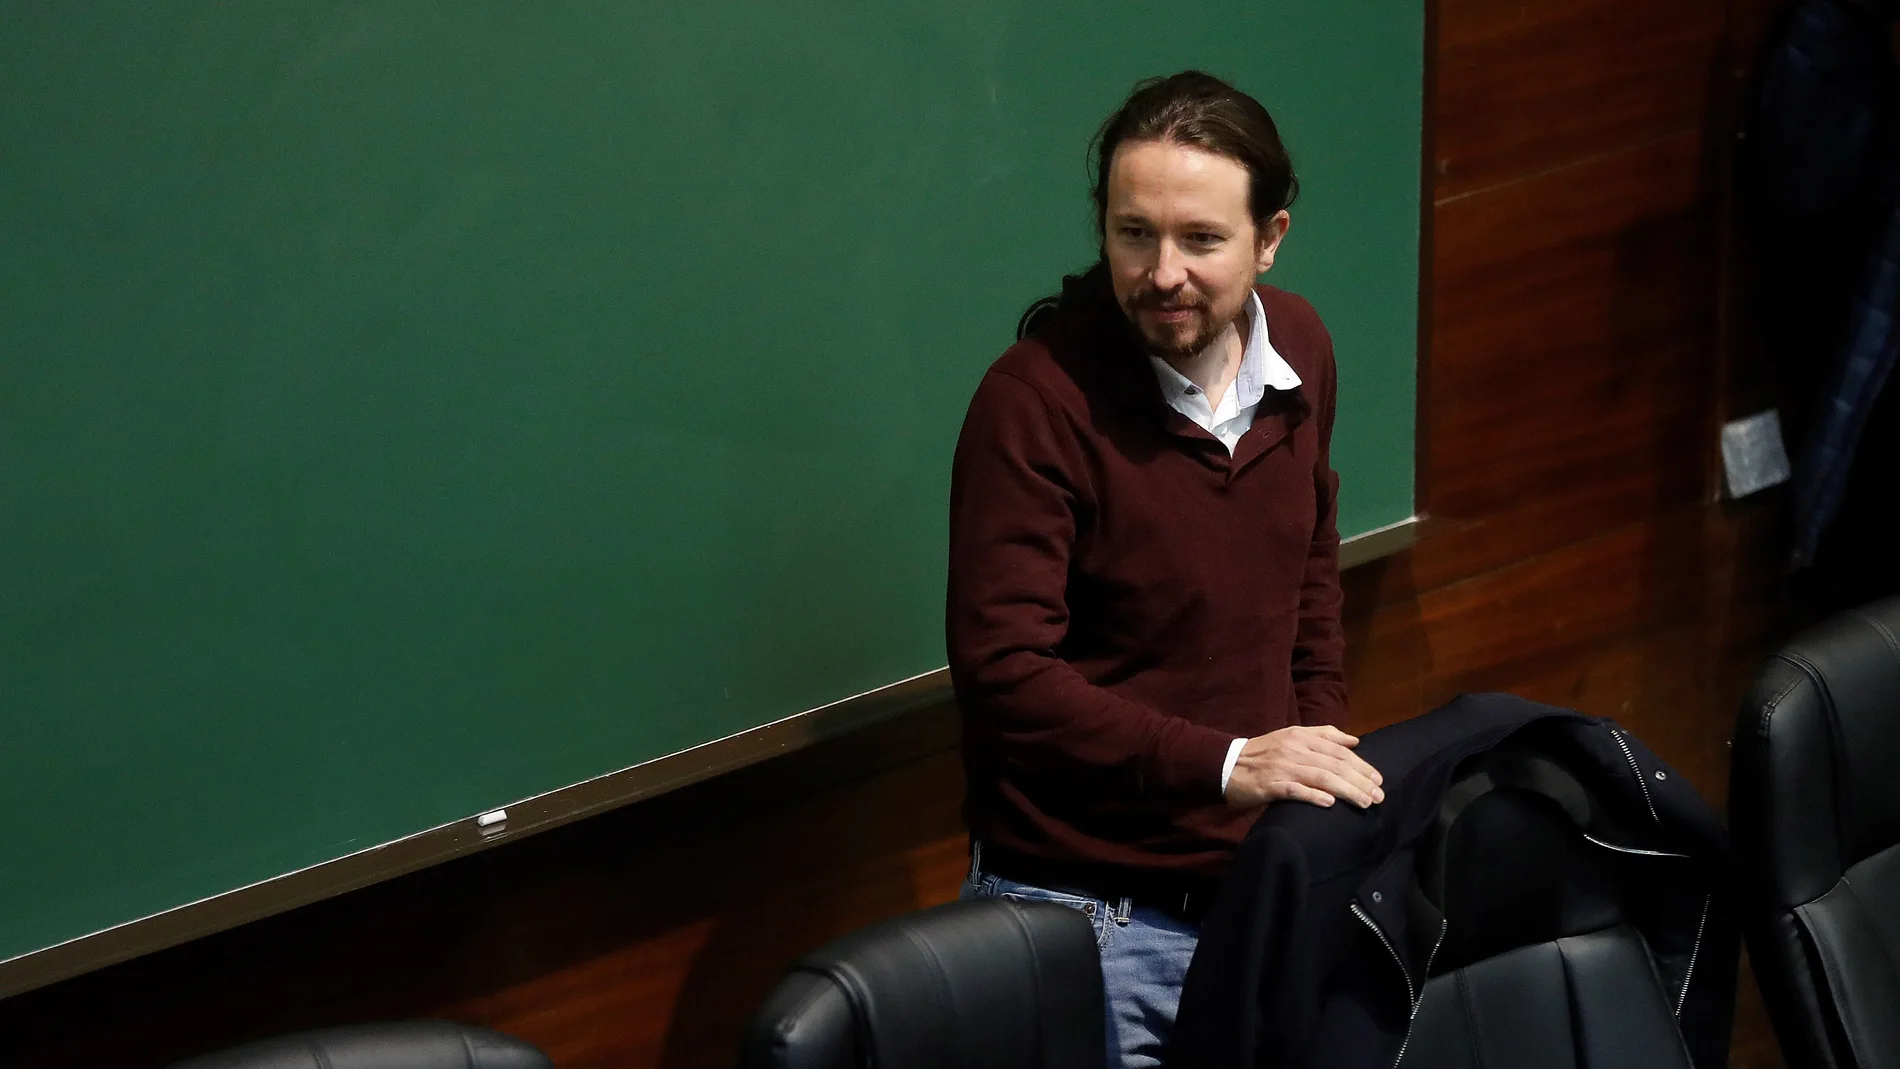 El líder de Podemos, Pablo Iglesias, participó en la charla "La lucha antifascista en la Unión de Estudiantes Progresistas - Estudiantes de Izquierda (UEP - ei)" en la Universidad Complutense, su primera comparecencia pública más de una semana después de la firma del preacuerdo para un gobierno de coalición. EFE/Juan Carlos Hidalgo